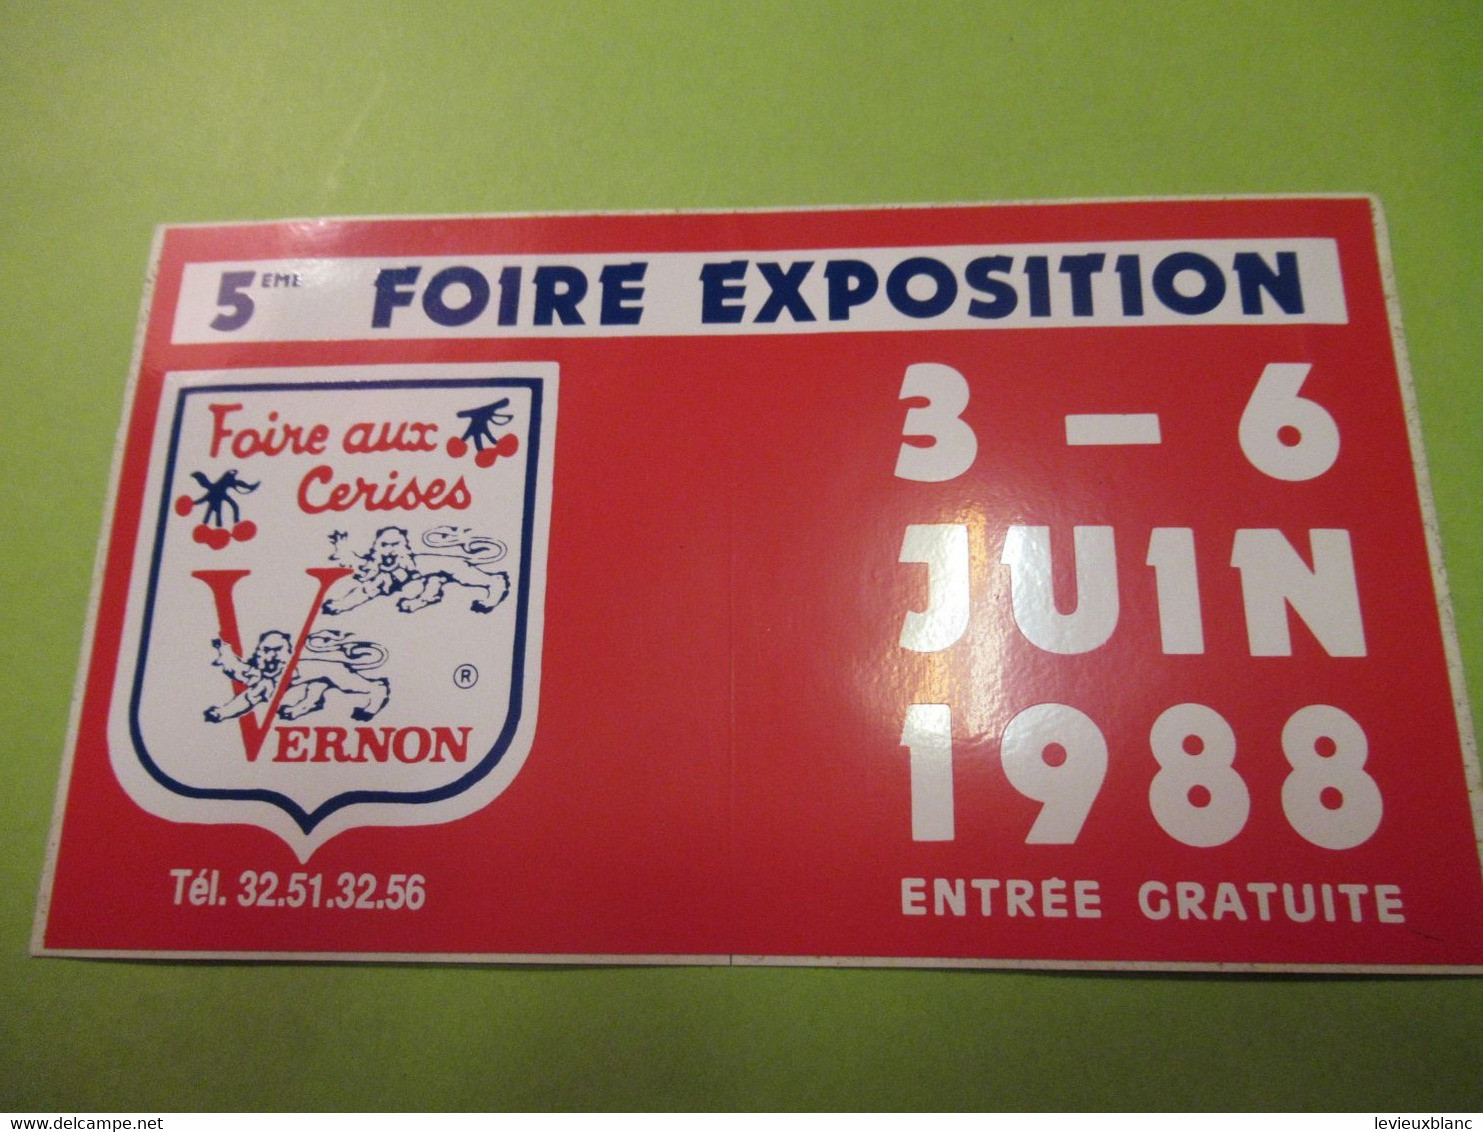 Expo/ 5éme Foire Exposition / Foire Aux Cerises/ VERNON/ 3-6 Juin 1988    ACOL165 - Aufkleber